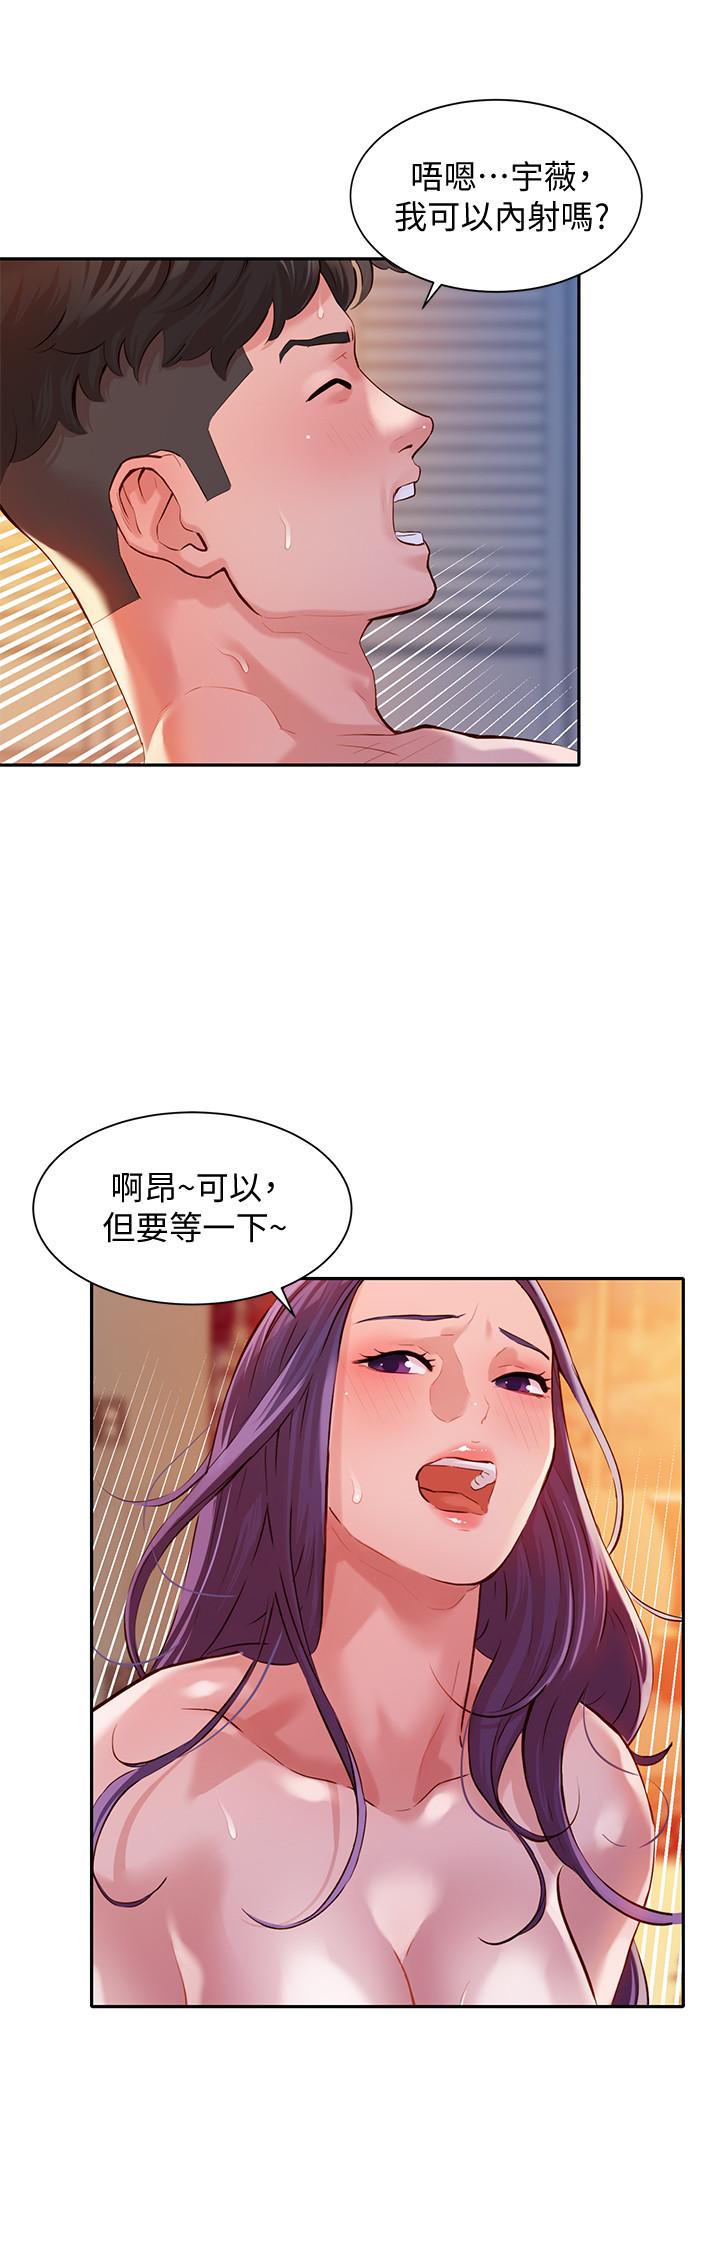 韩国污漫画 女神寫真 第11话-喜欢真枪实弹的感觉 26